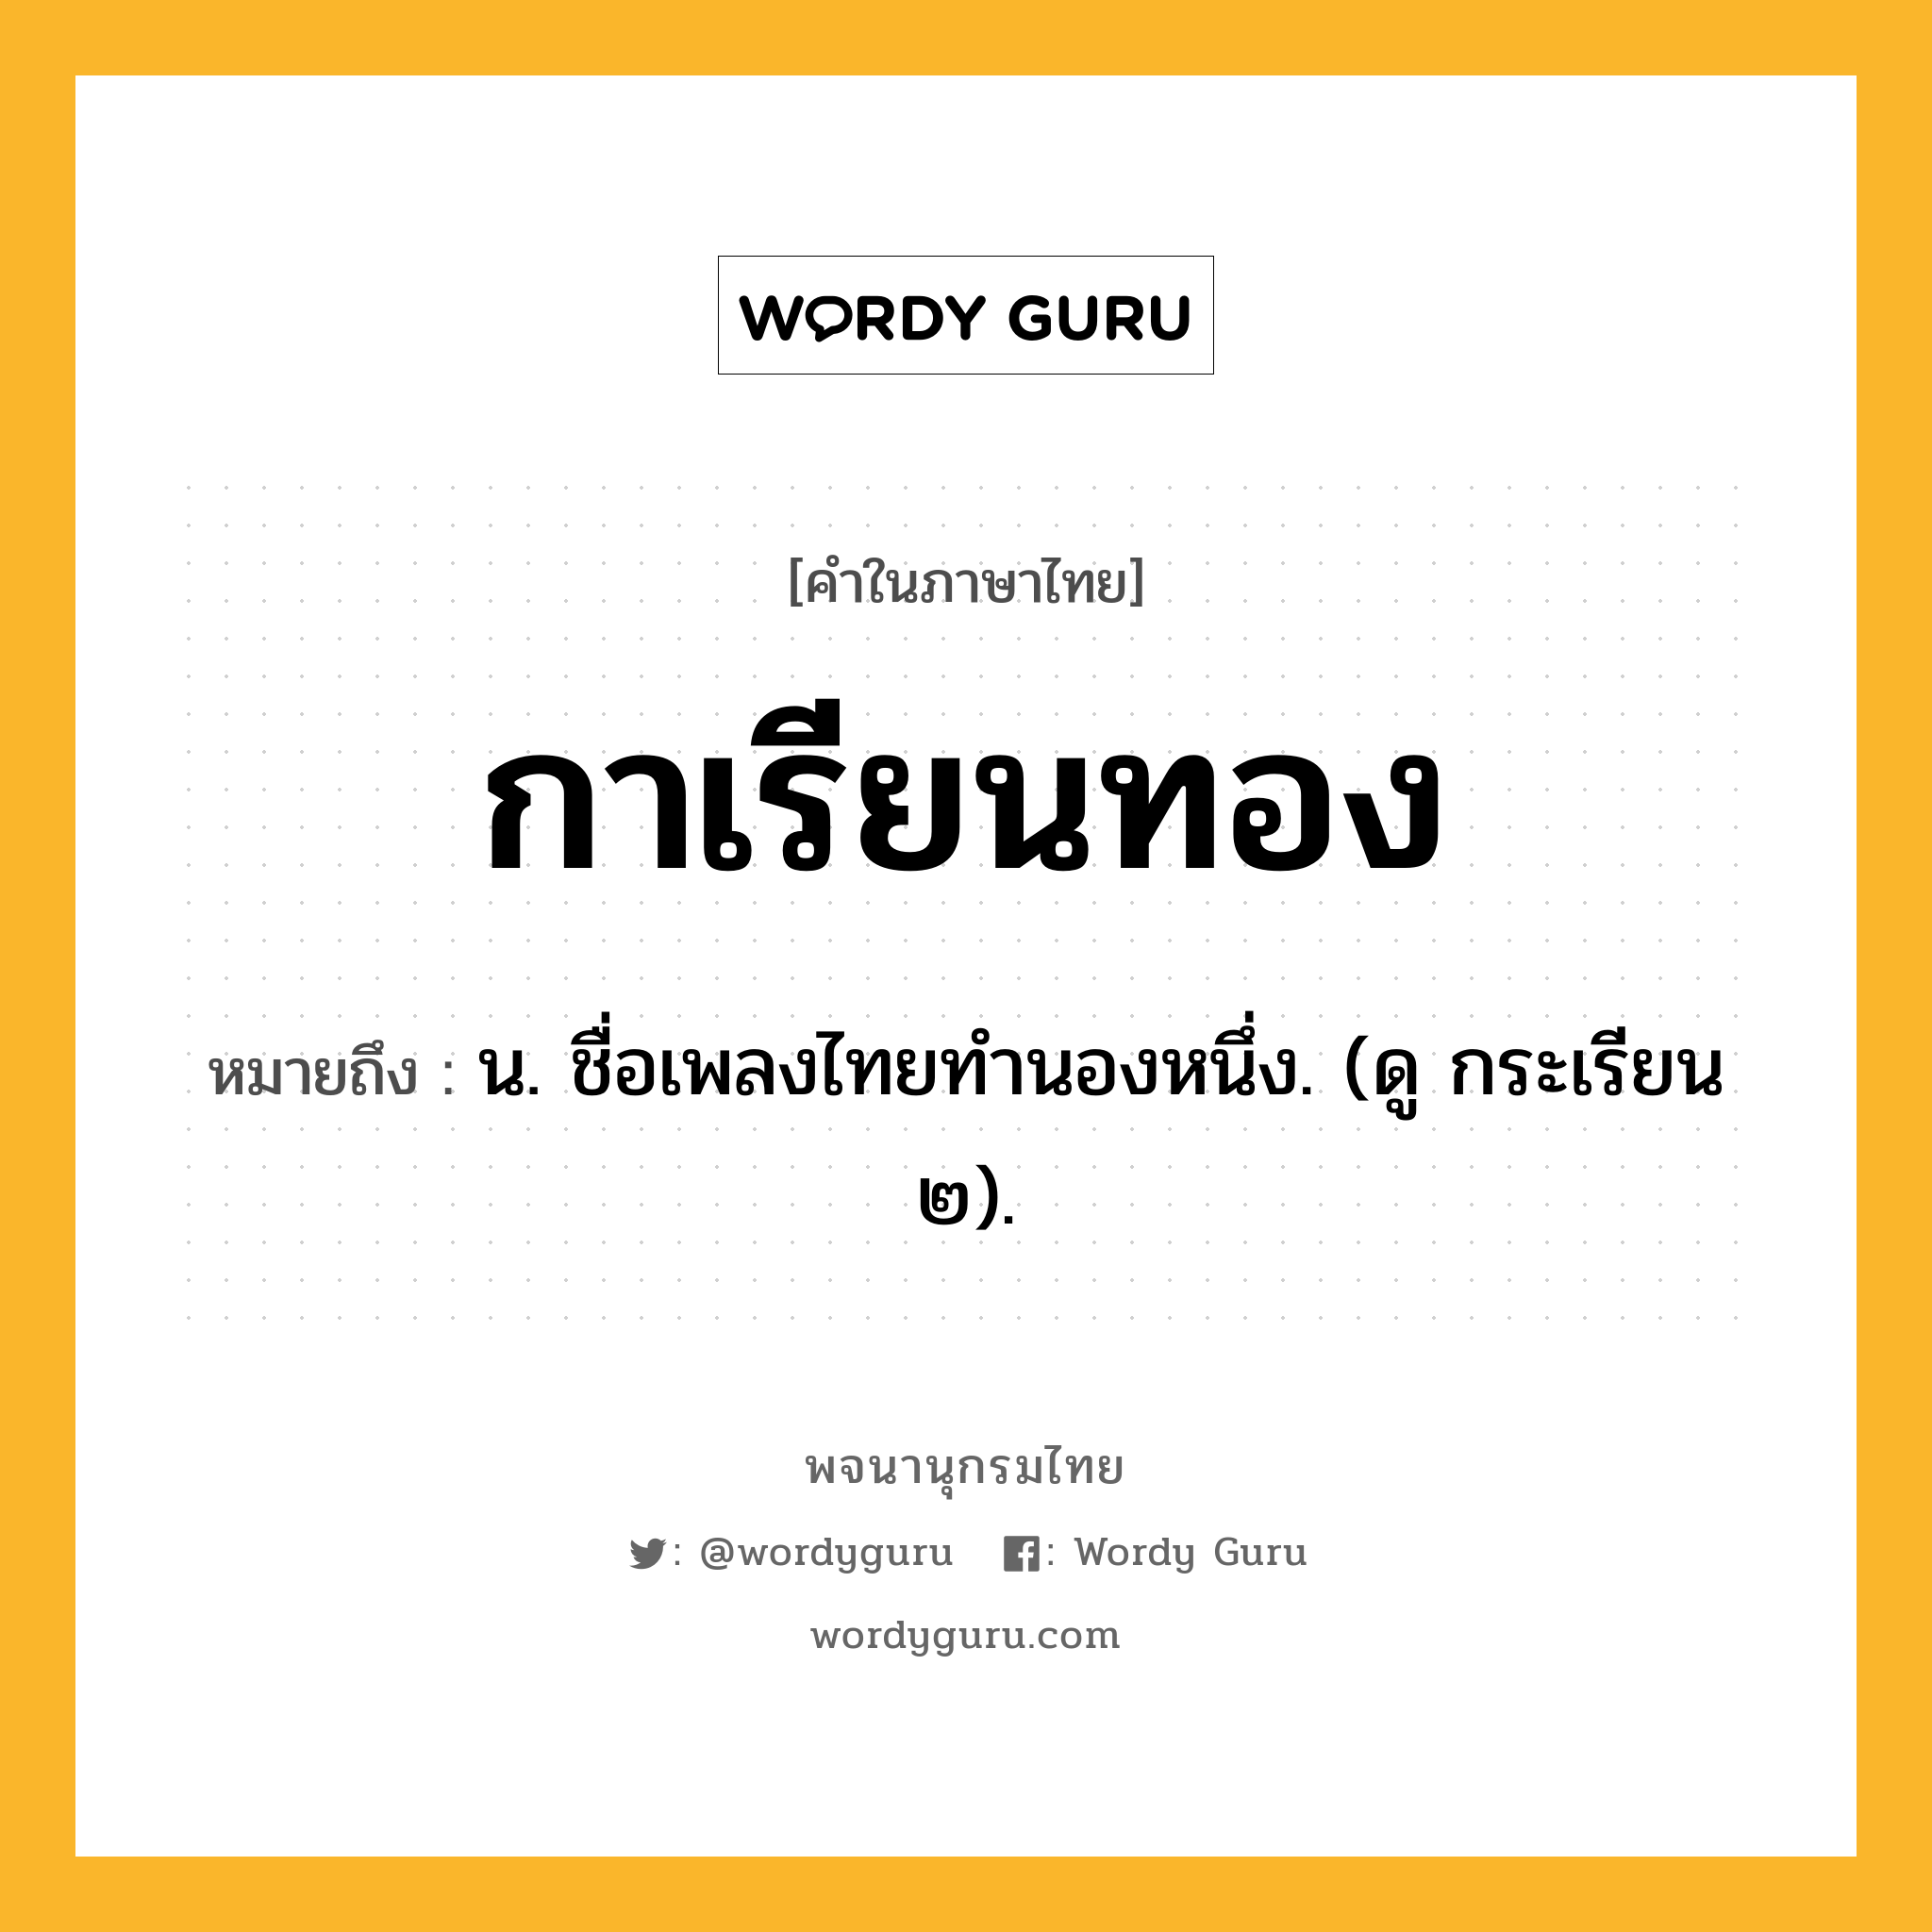 กาเรียนทอง หมายถึงอะไร?, คำในภาษาไทย กาเรียนทอง หมายถึง น. ชื่อเพลงไทยทำนองหนึ่ง. (ดู กระเรียน ๒).